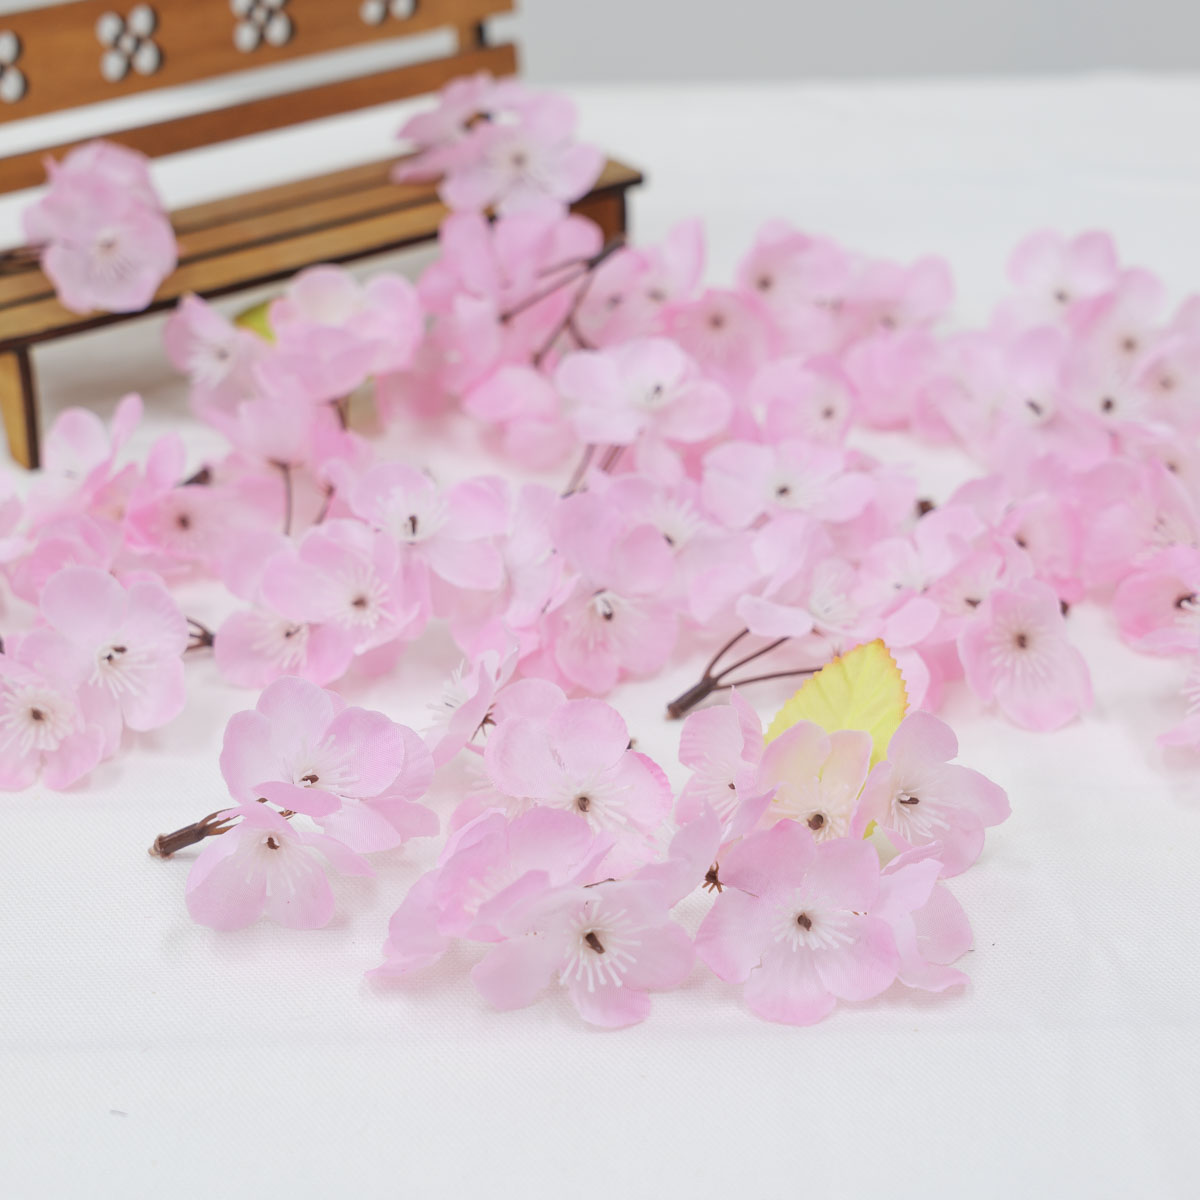 조화 봄 벚꽃잎 꽃송이 300개 1봉지, 실크플라워 조화꽃 실내장식 상품 다중이미지 썸네일